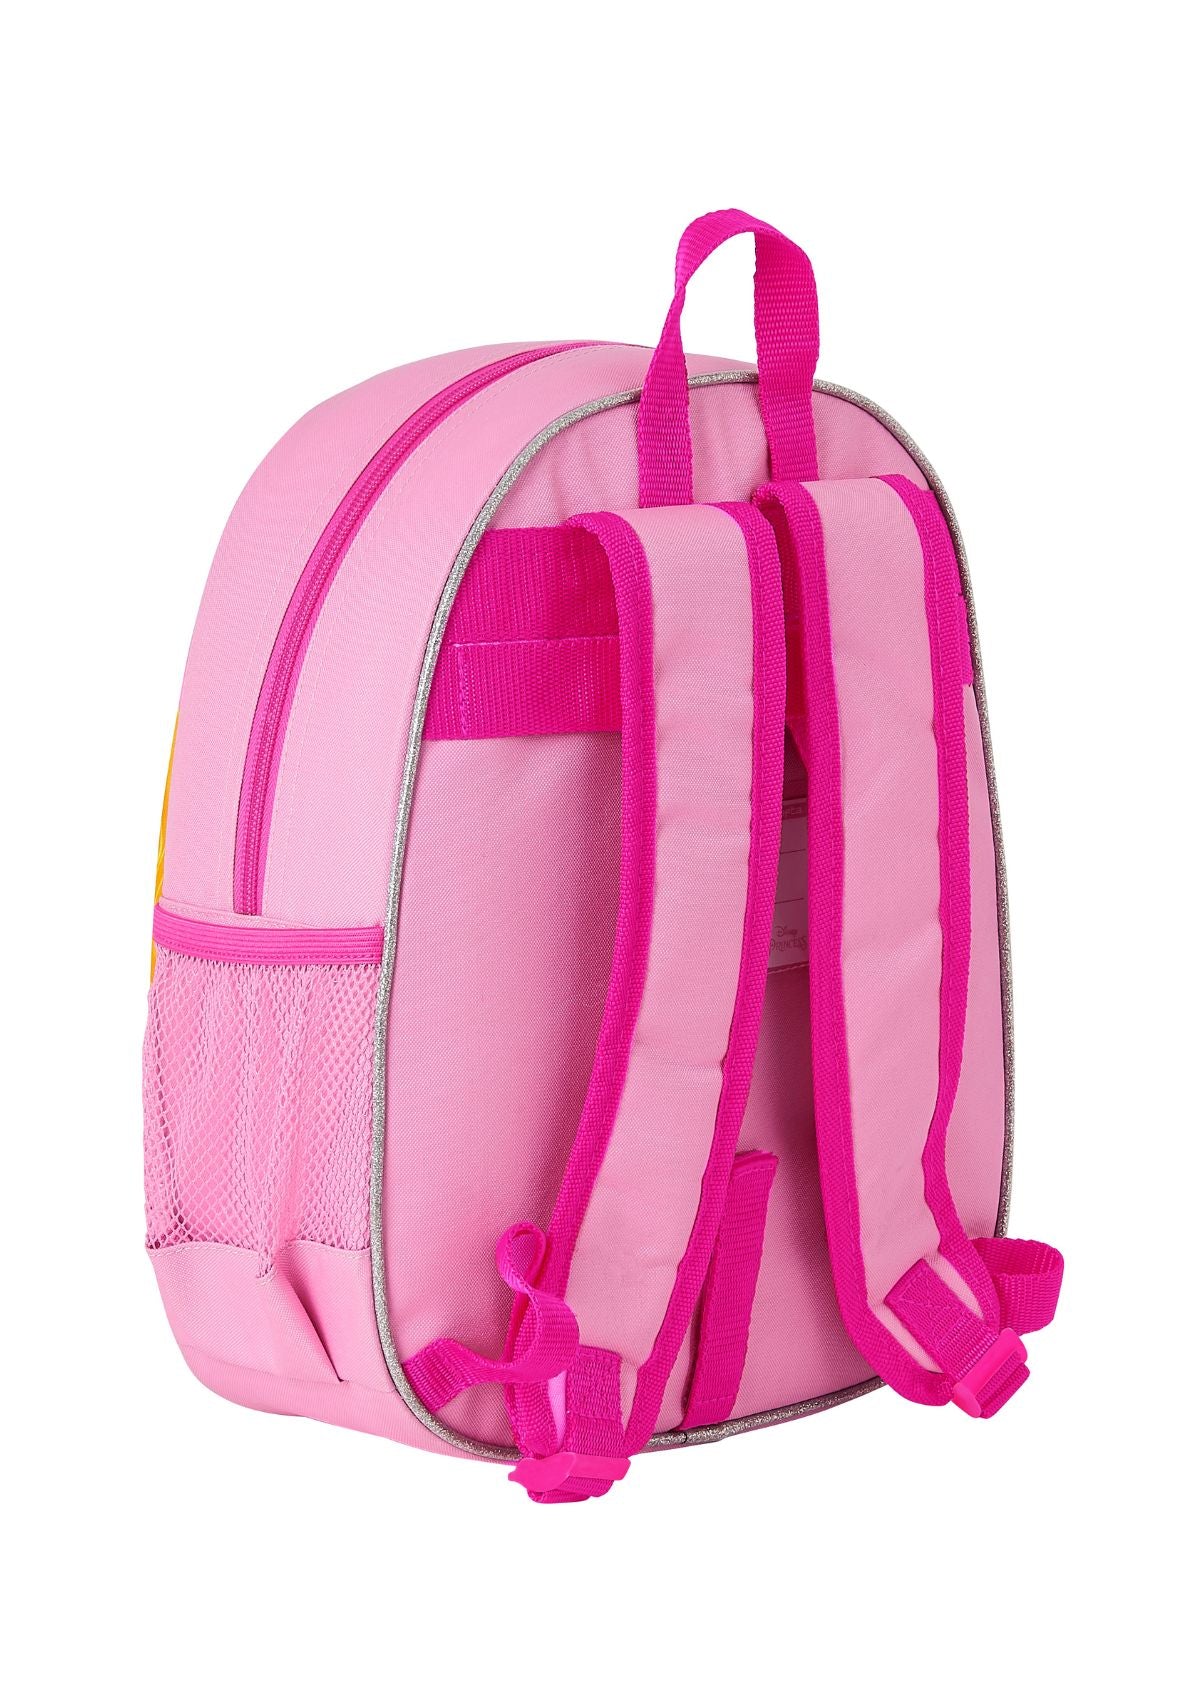 Safta Bagpack Minnie Mouse 3D Pink back